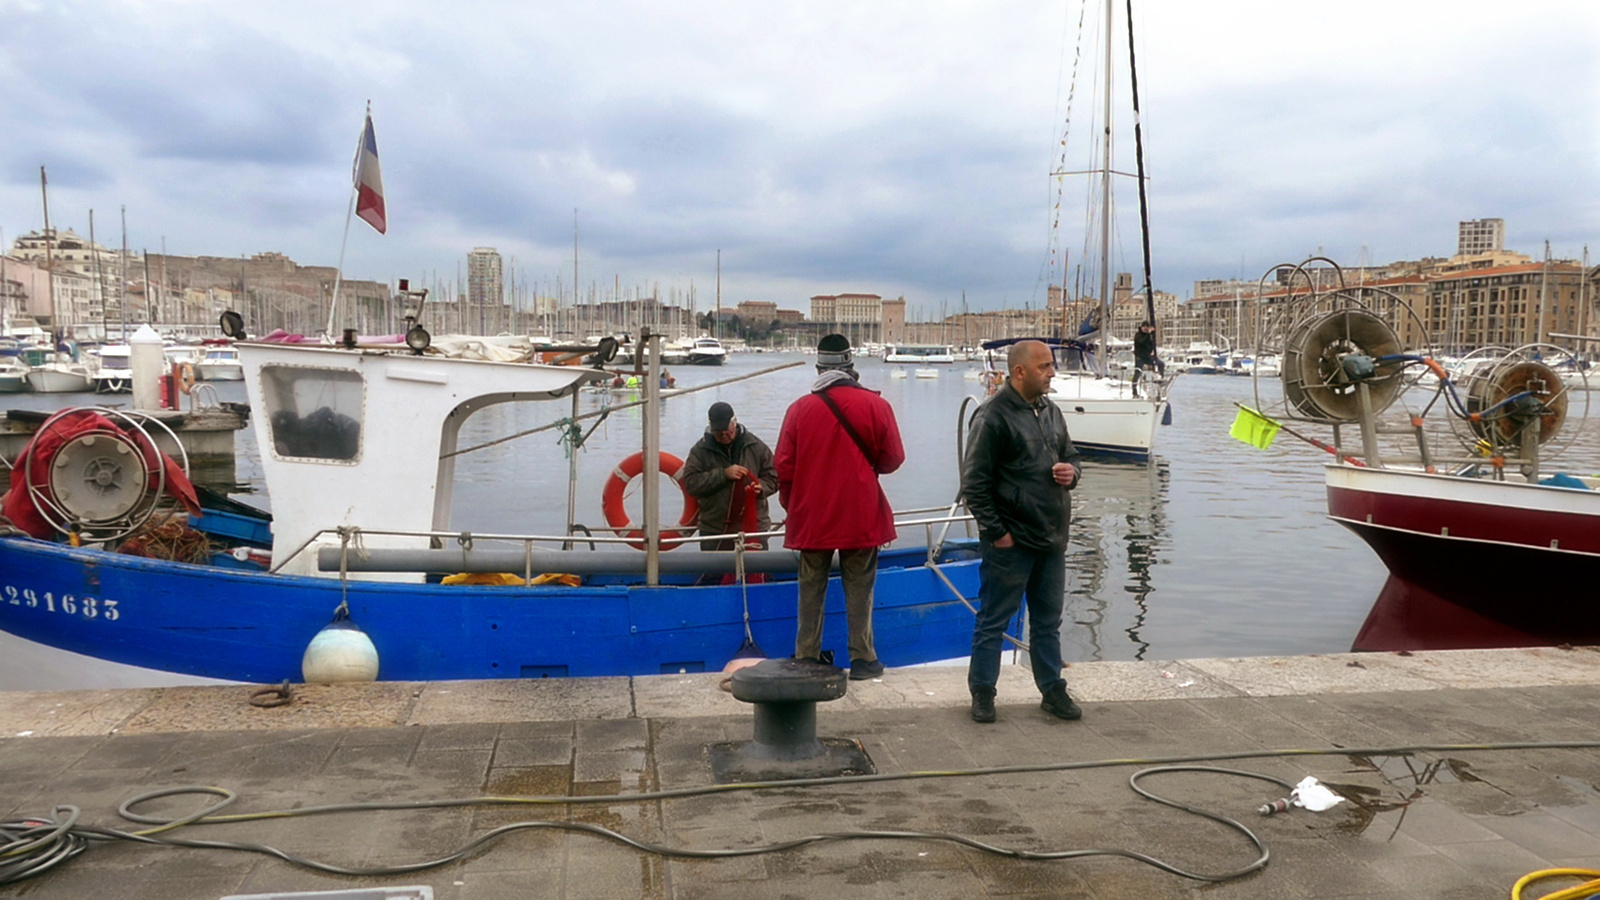 Costa - Marseille kikötő